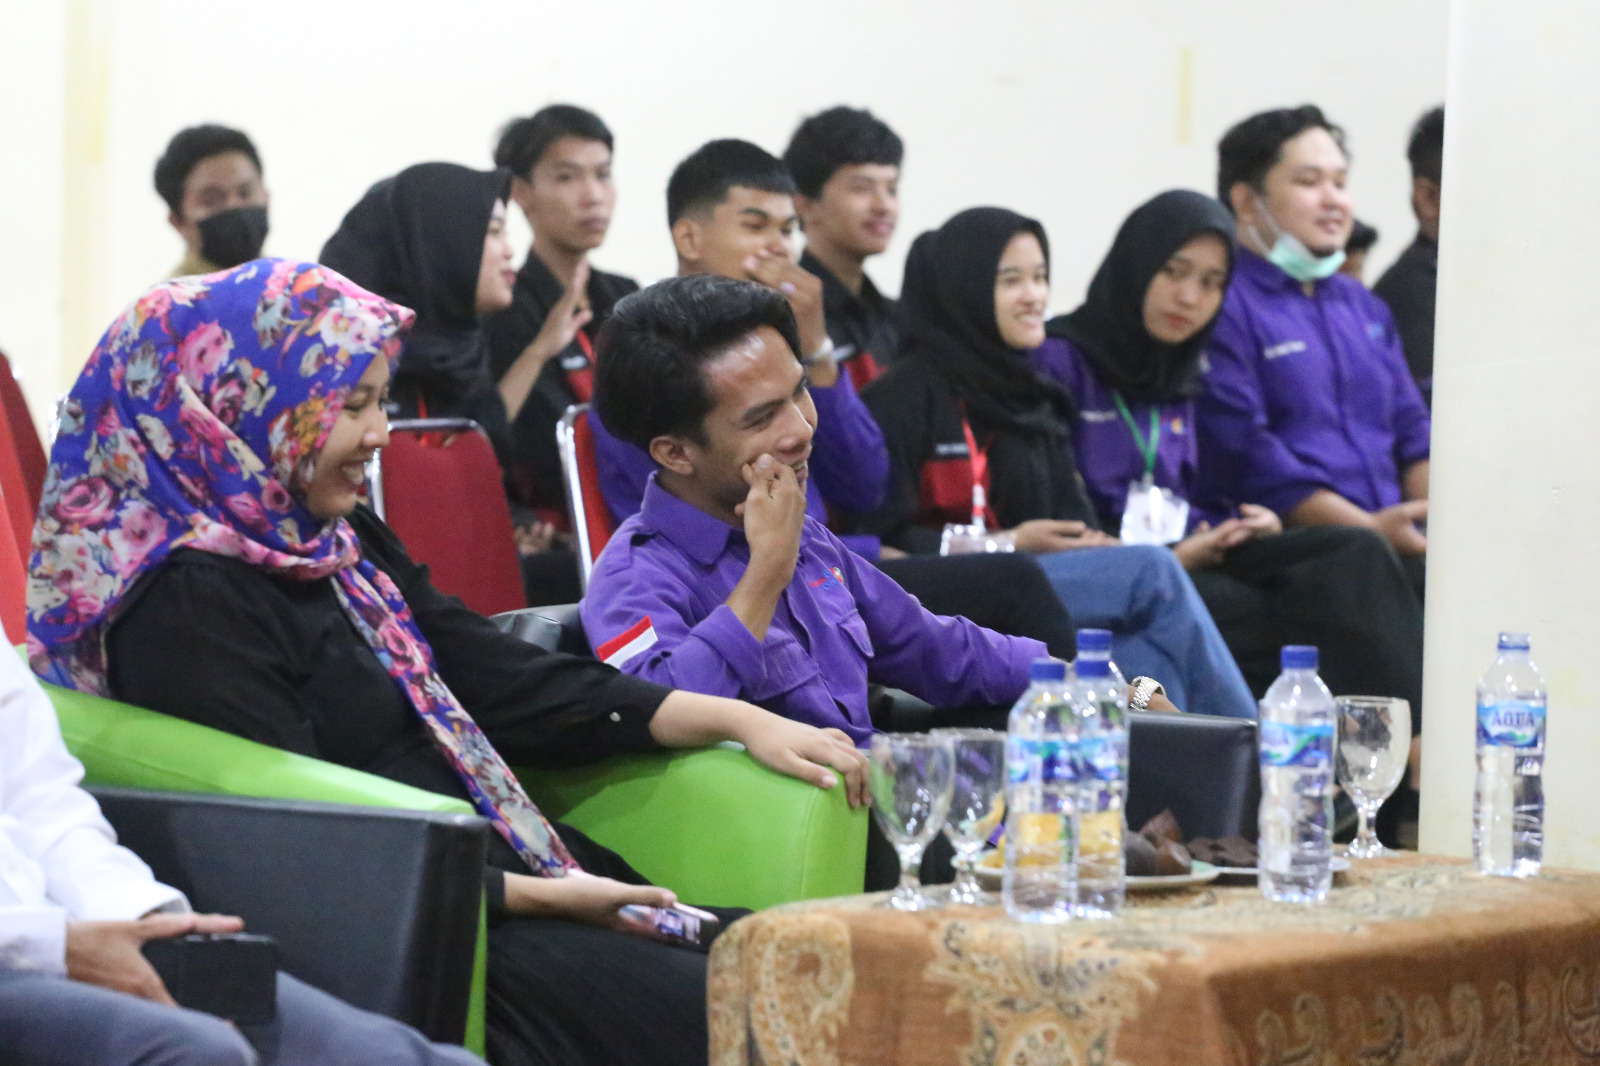 Himpunan Mahasiswa Sipil Universitas Bina Darma Palembang Gelar Talkshow Enggenering